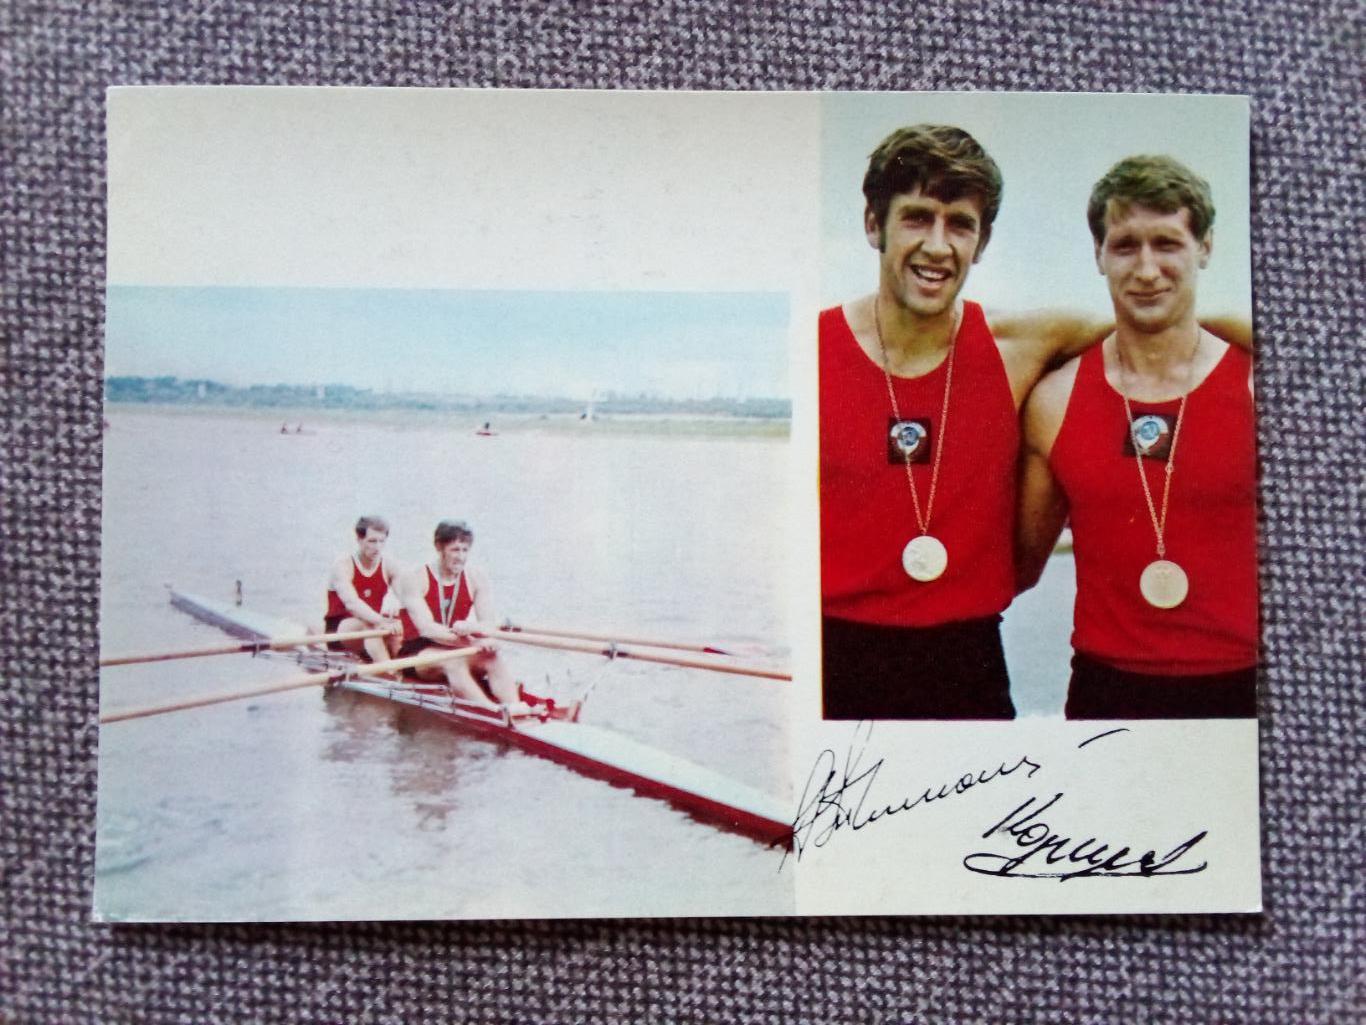 Спорт : А. Тимошинин и Г. Коршиков Олимпийские чемпионы 1972 г. Гребля